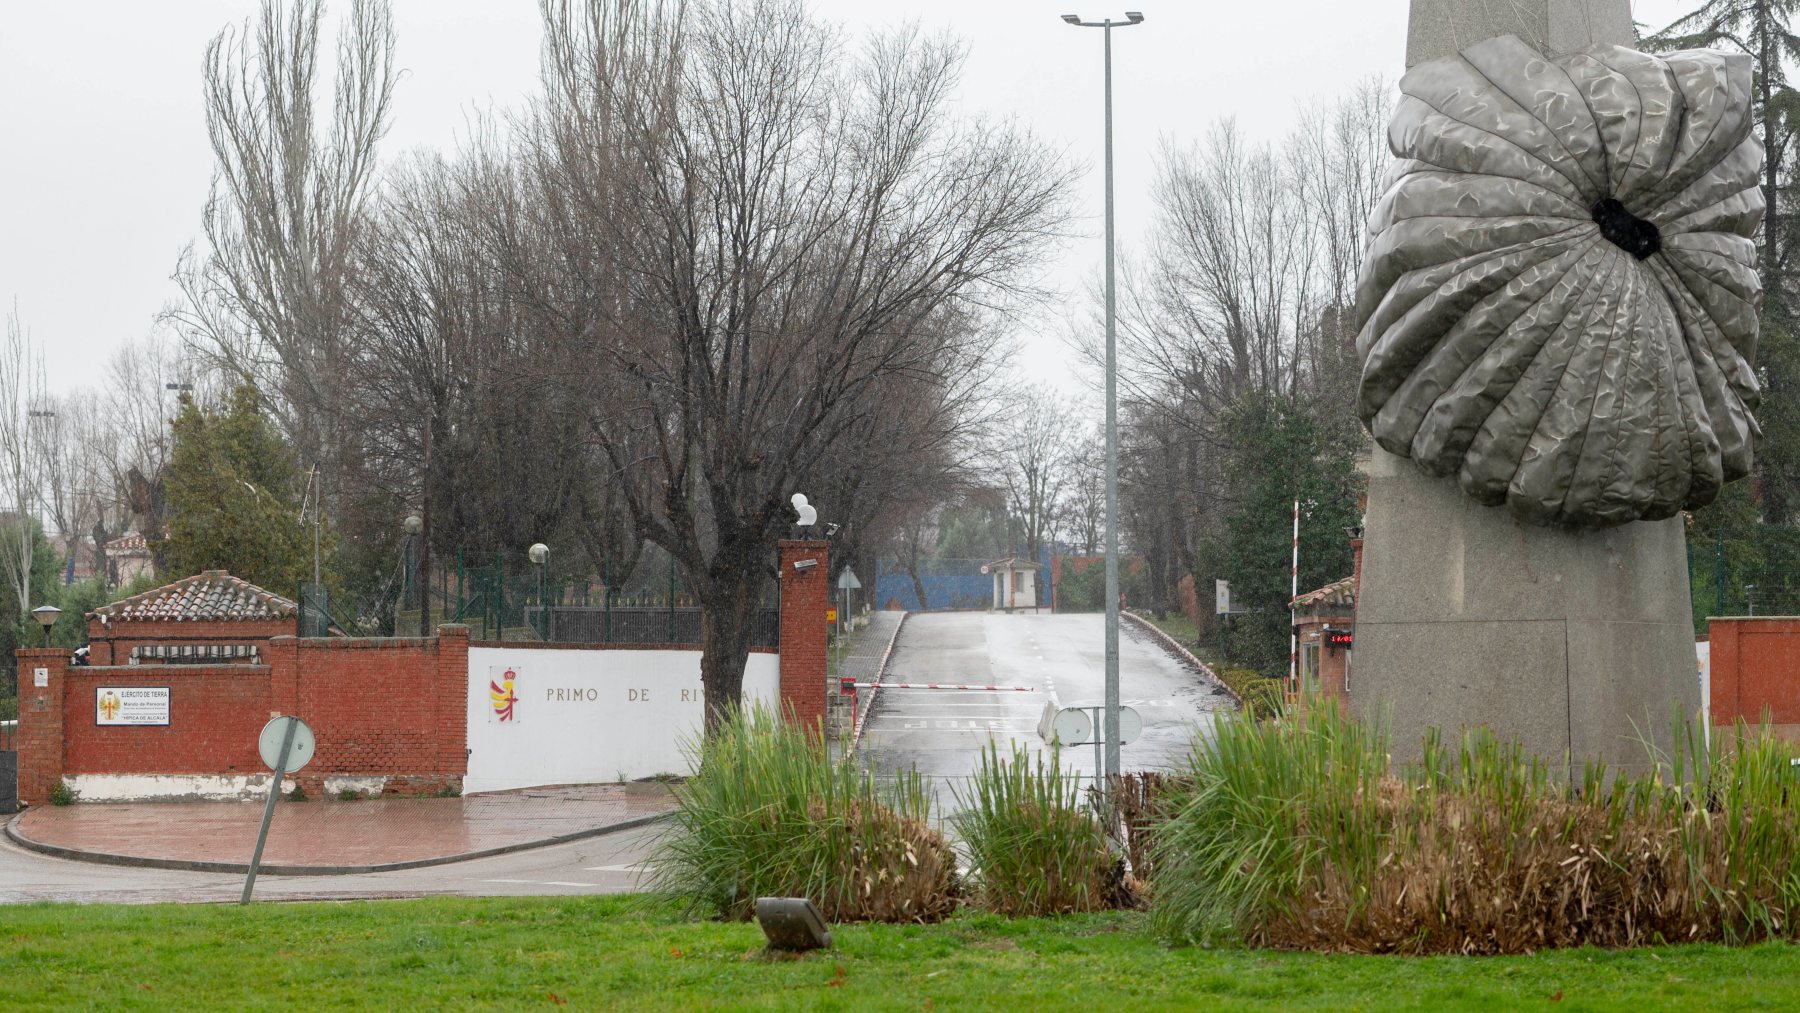 La base donde se alojan inmigrantes en Alcalá de Henares. (Foto: EP)